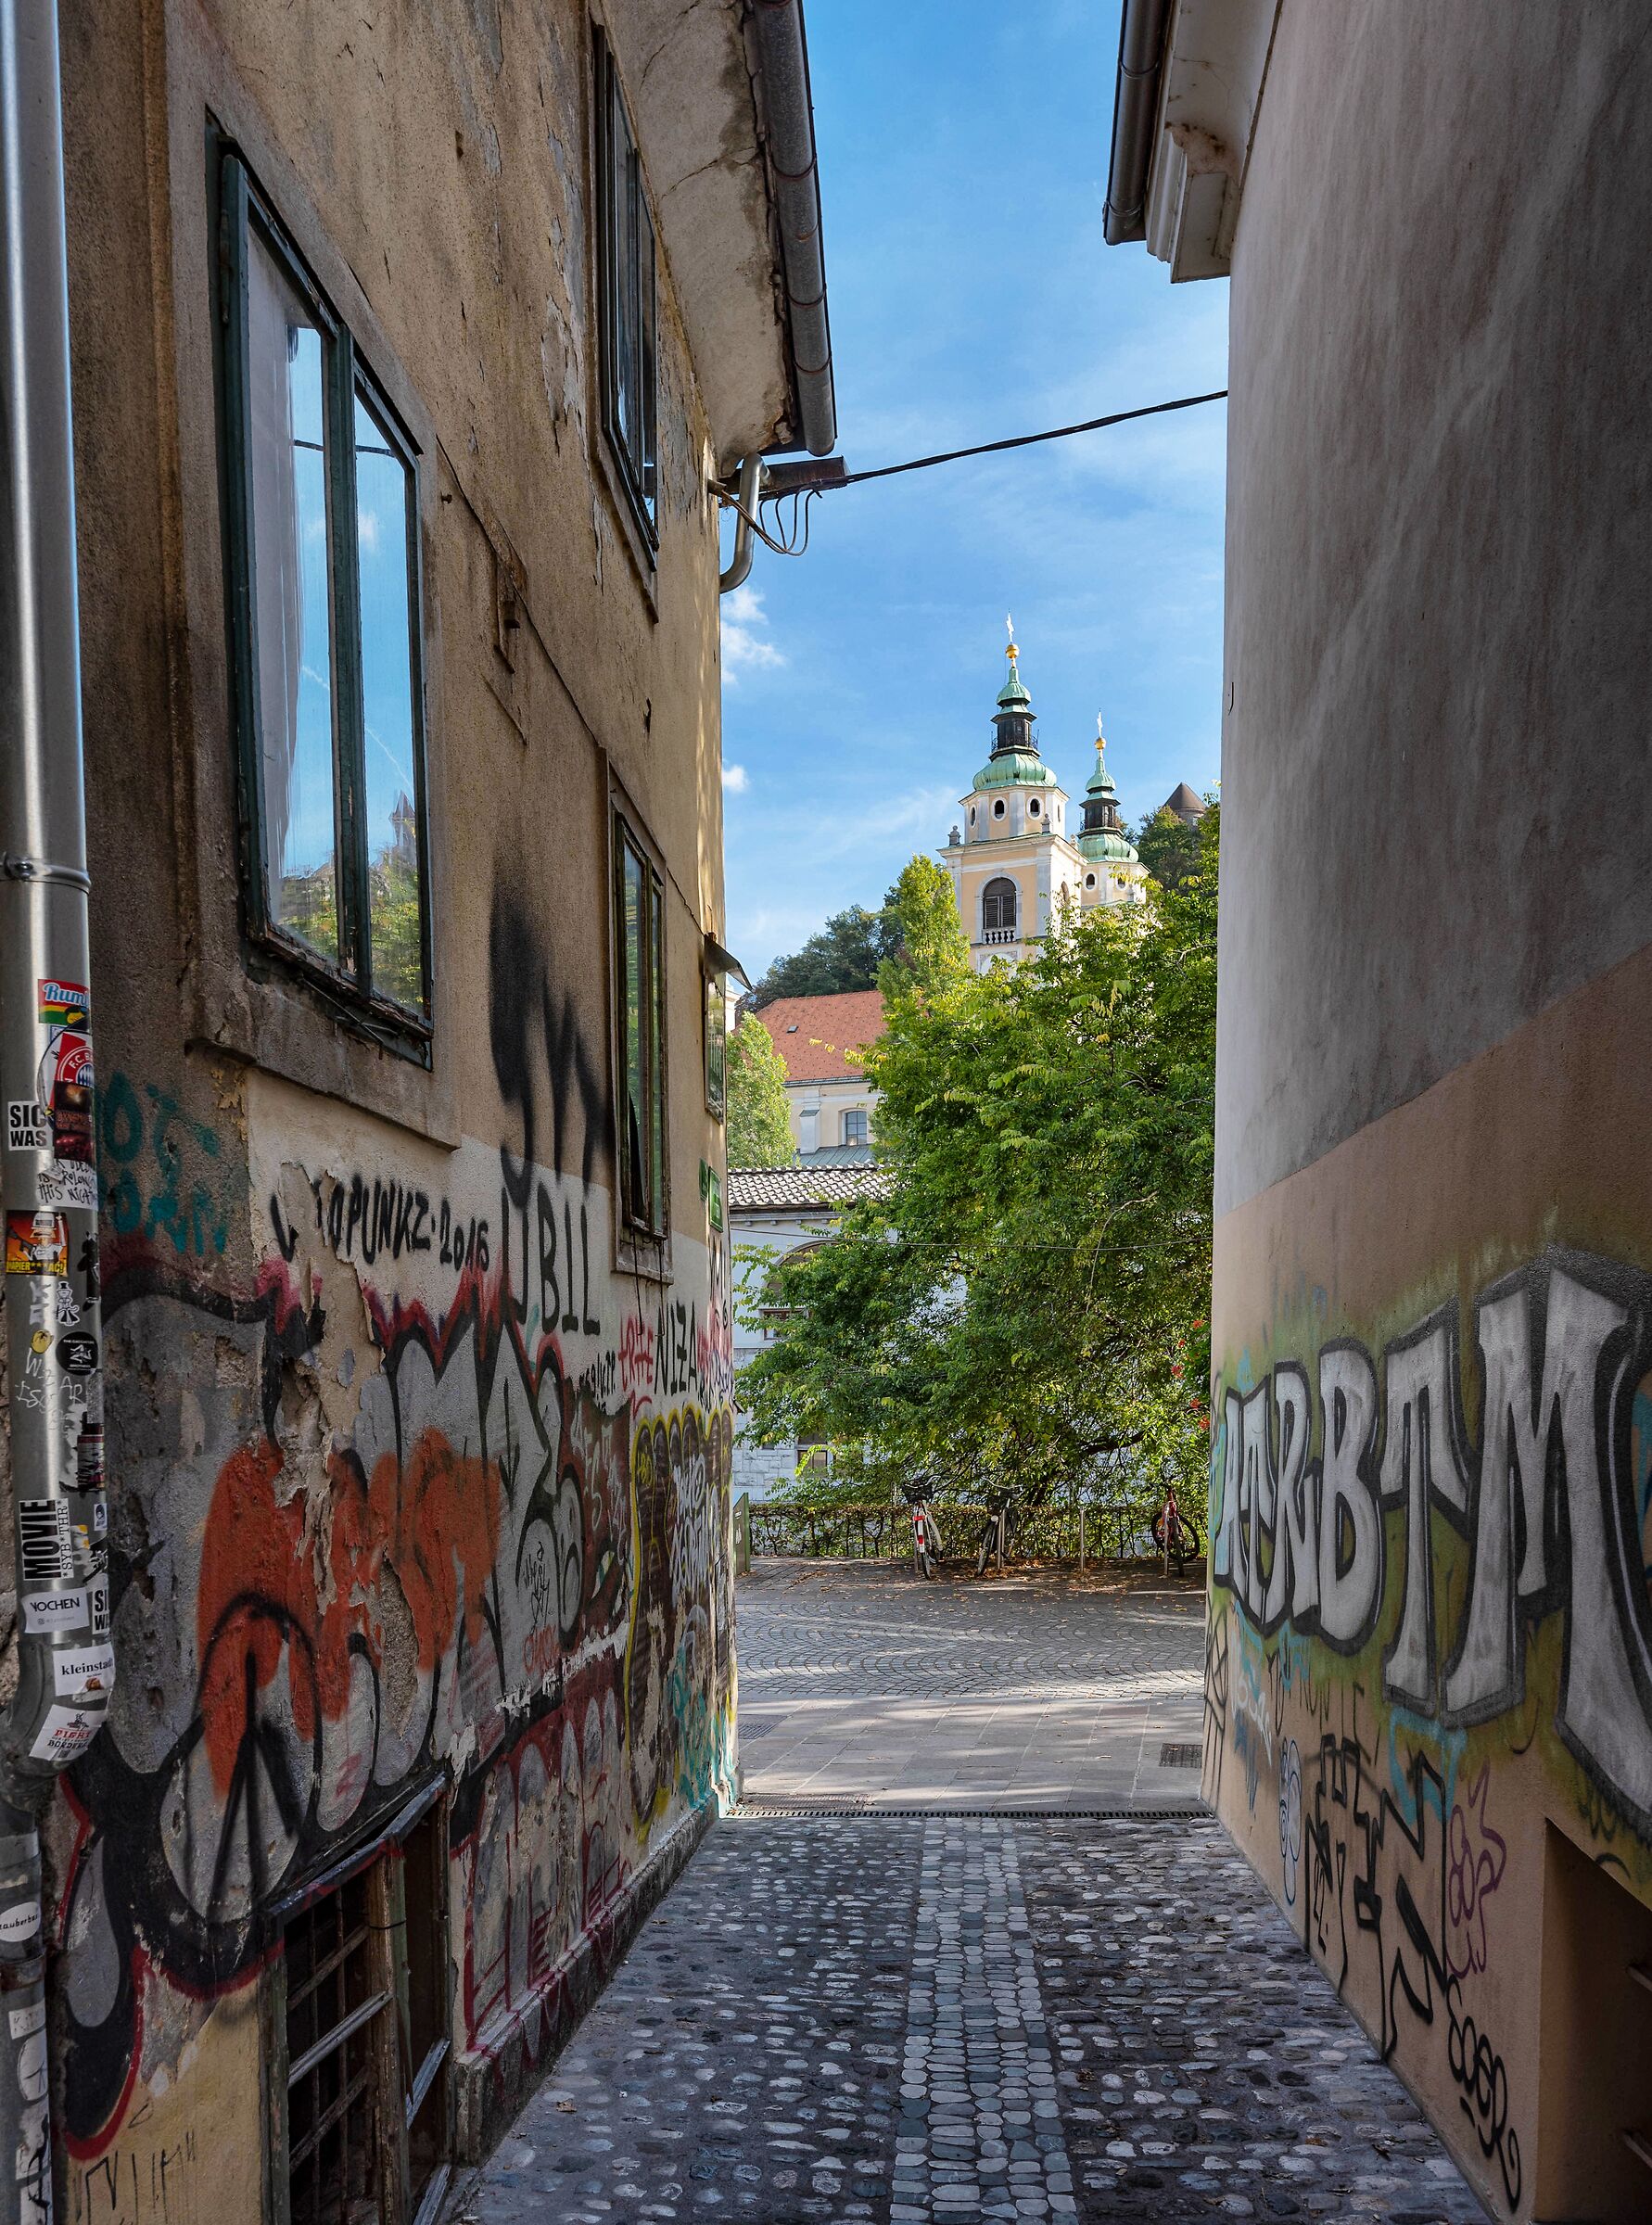 In the alleys of Ljubljana...